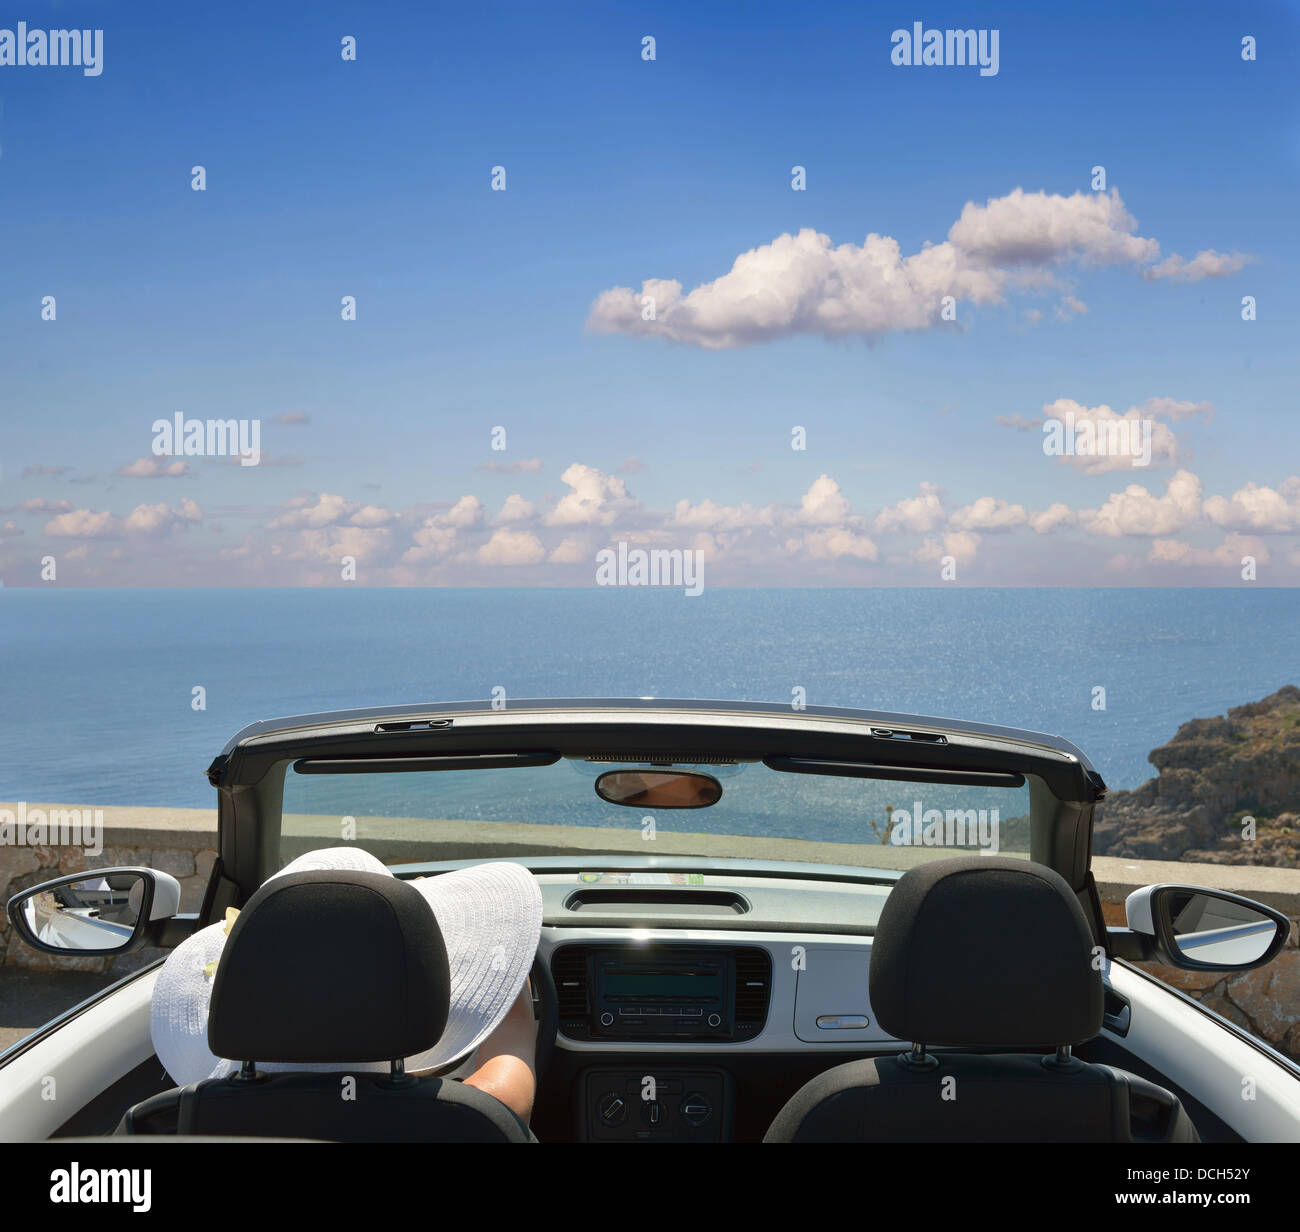 Woman in white hat dans une voiture ouverte avec une vue sur la mer Banque D'Images